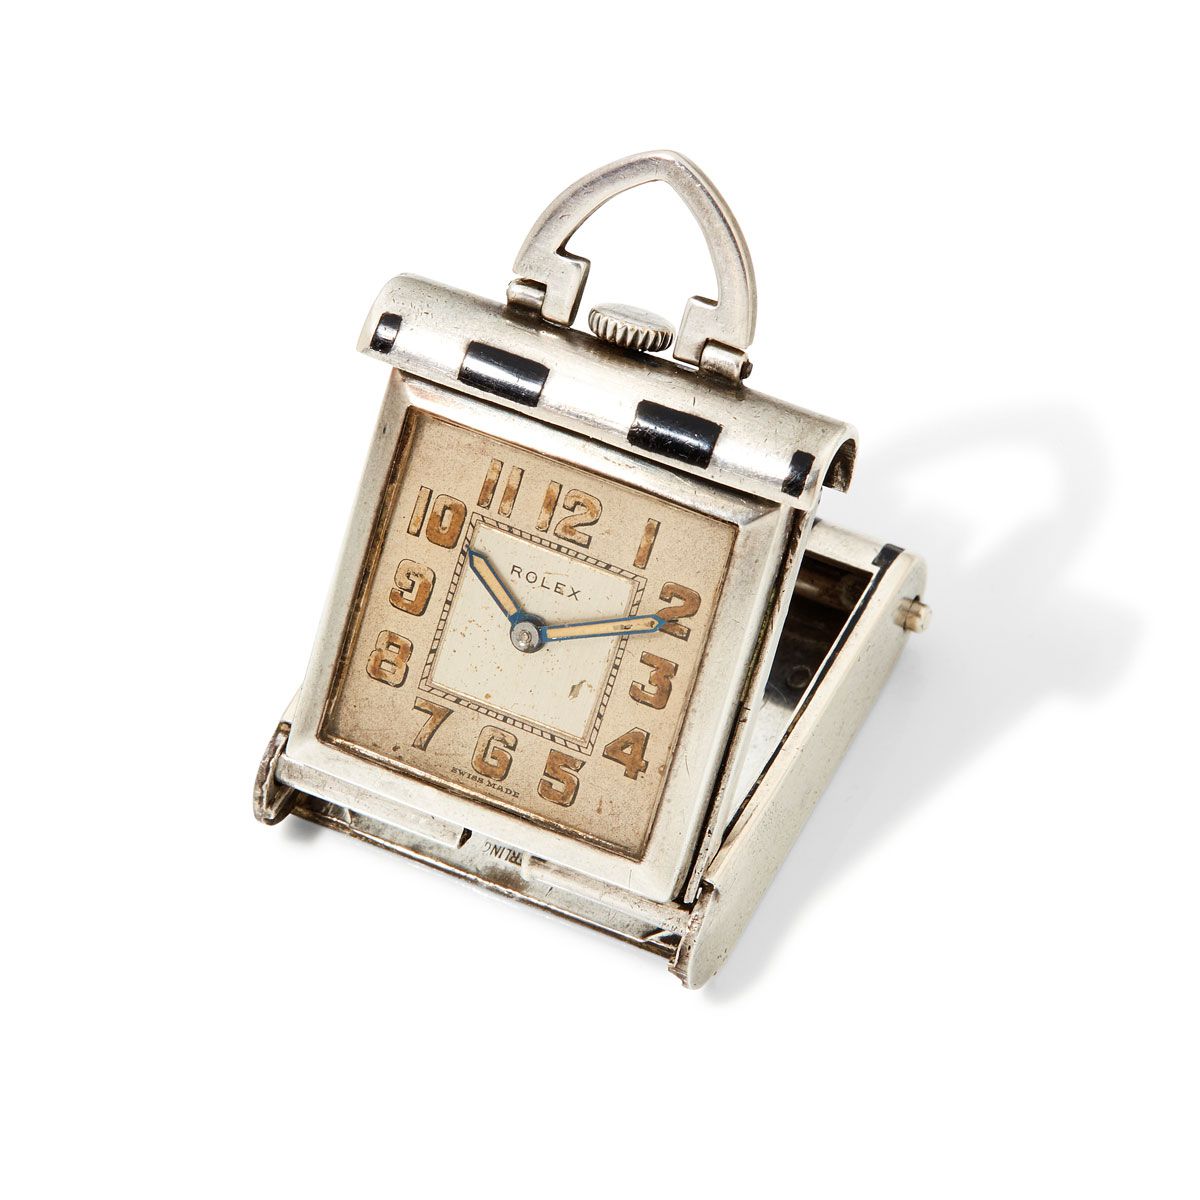 Null Rolex, nº 67870, alrededor de 1930.

Raro reloj de cabecera de plata Art De&hellip;